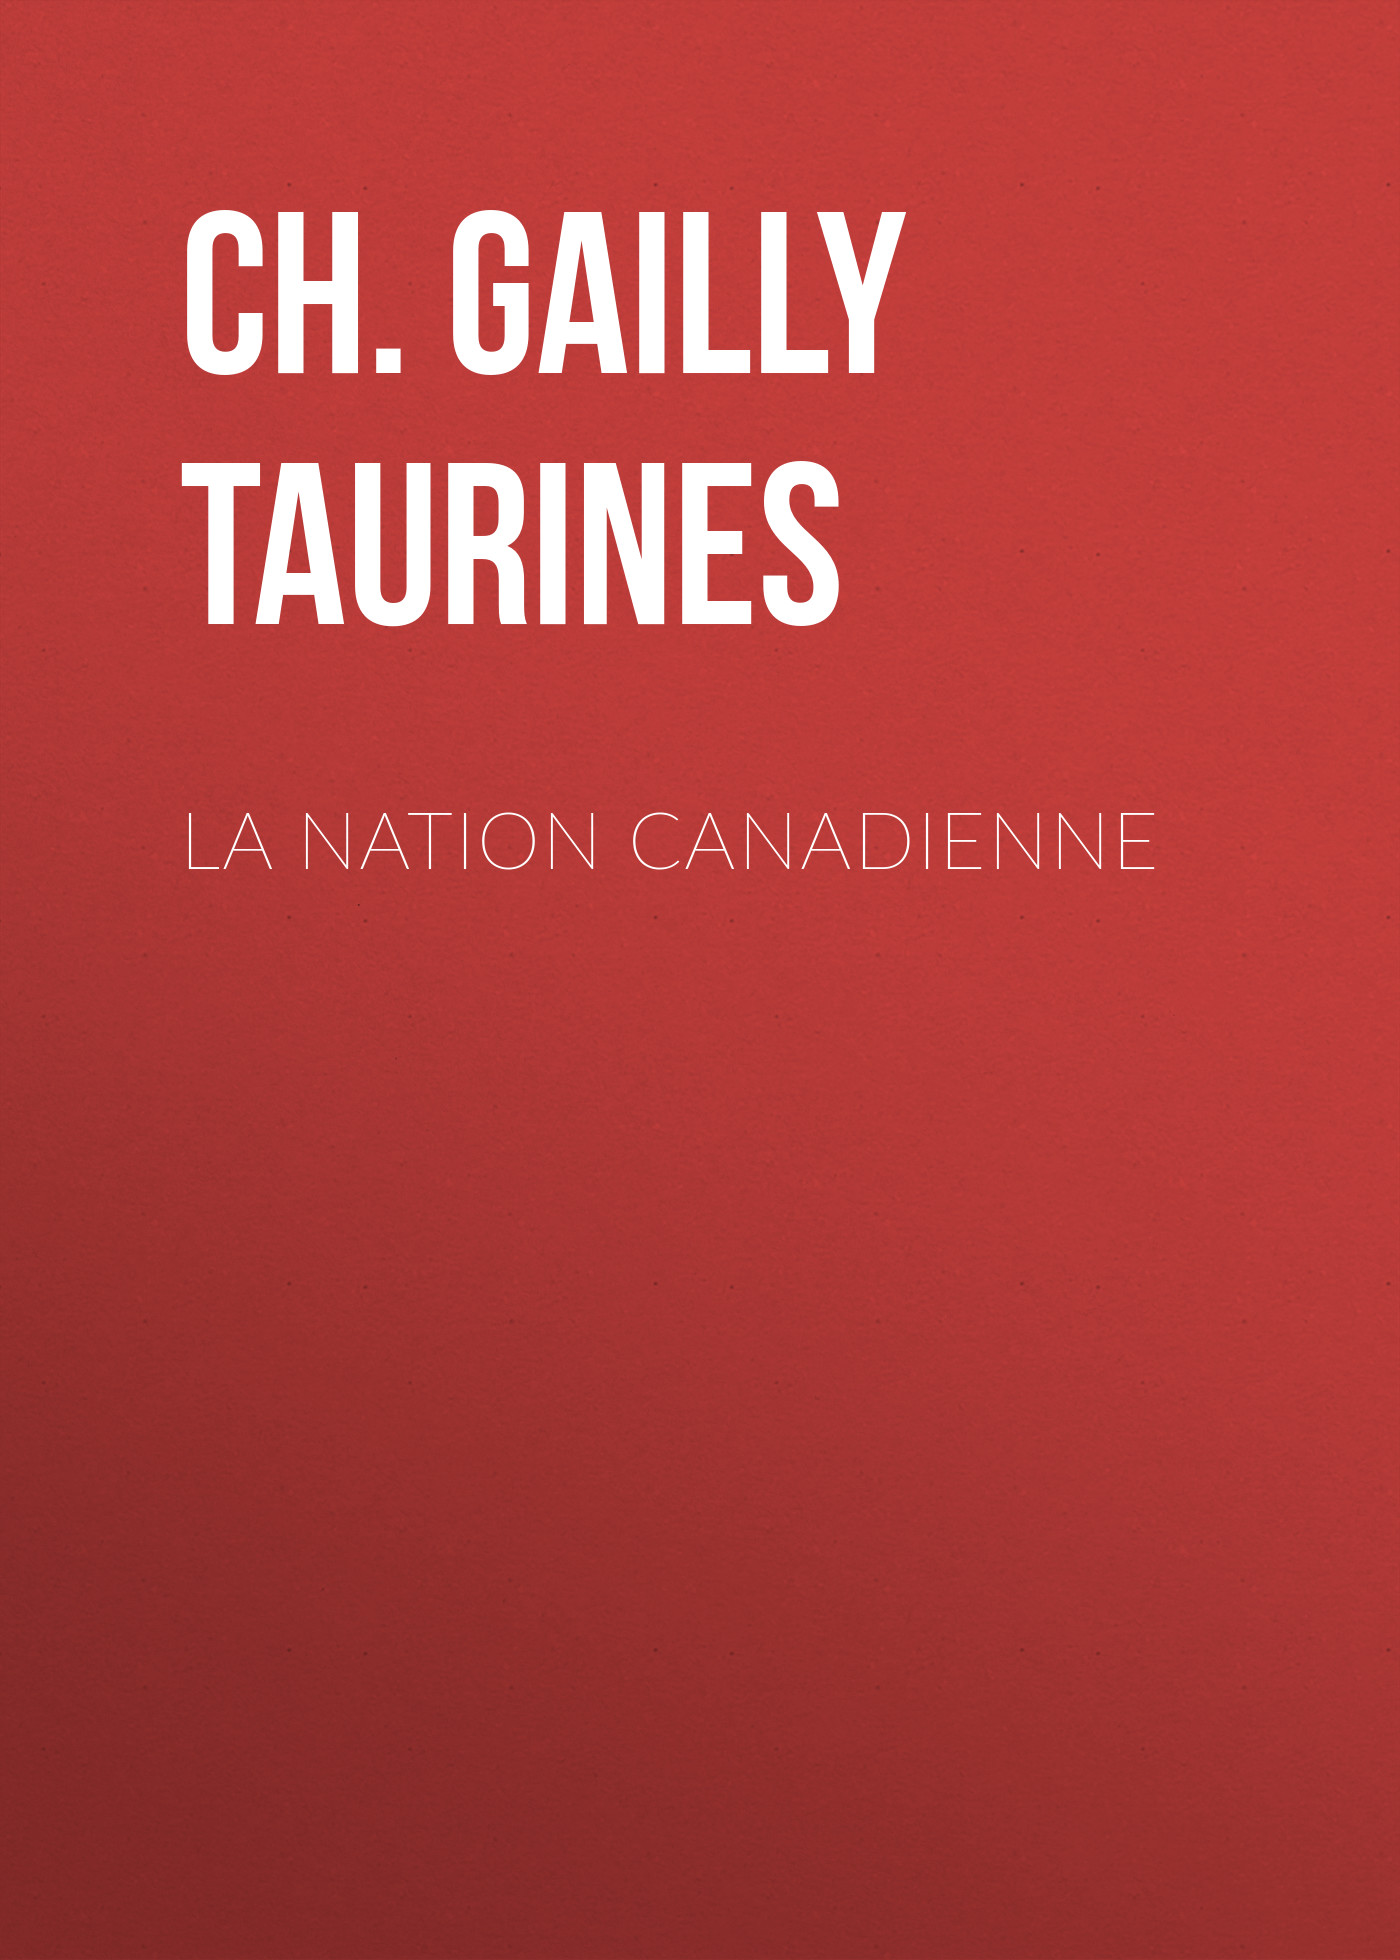 Книга La Nation canadienne из серии , созданная Ch. Gailly de Taurines, может относится к жанру Зарубежная старинная литература, Зарубежная классика. Стоимость электронной книги La Nation canadienne с идентификатором 24859835 составляет 0 руб.